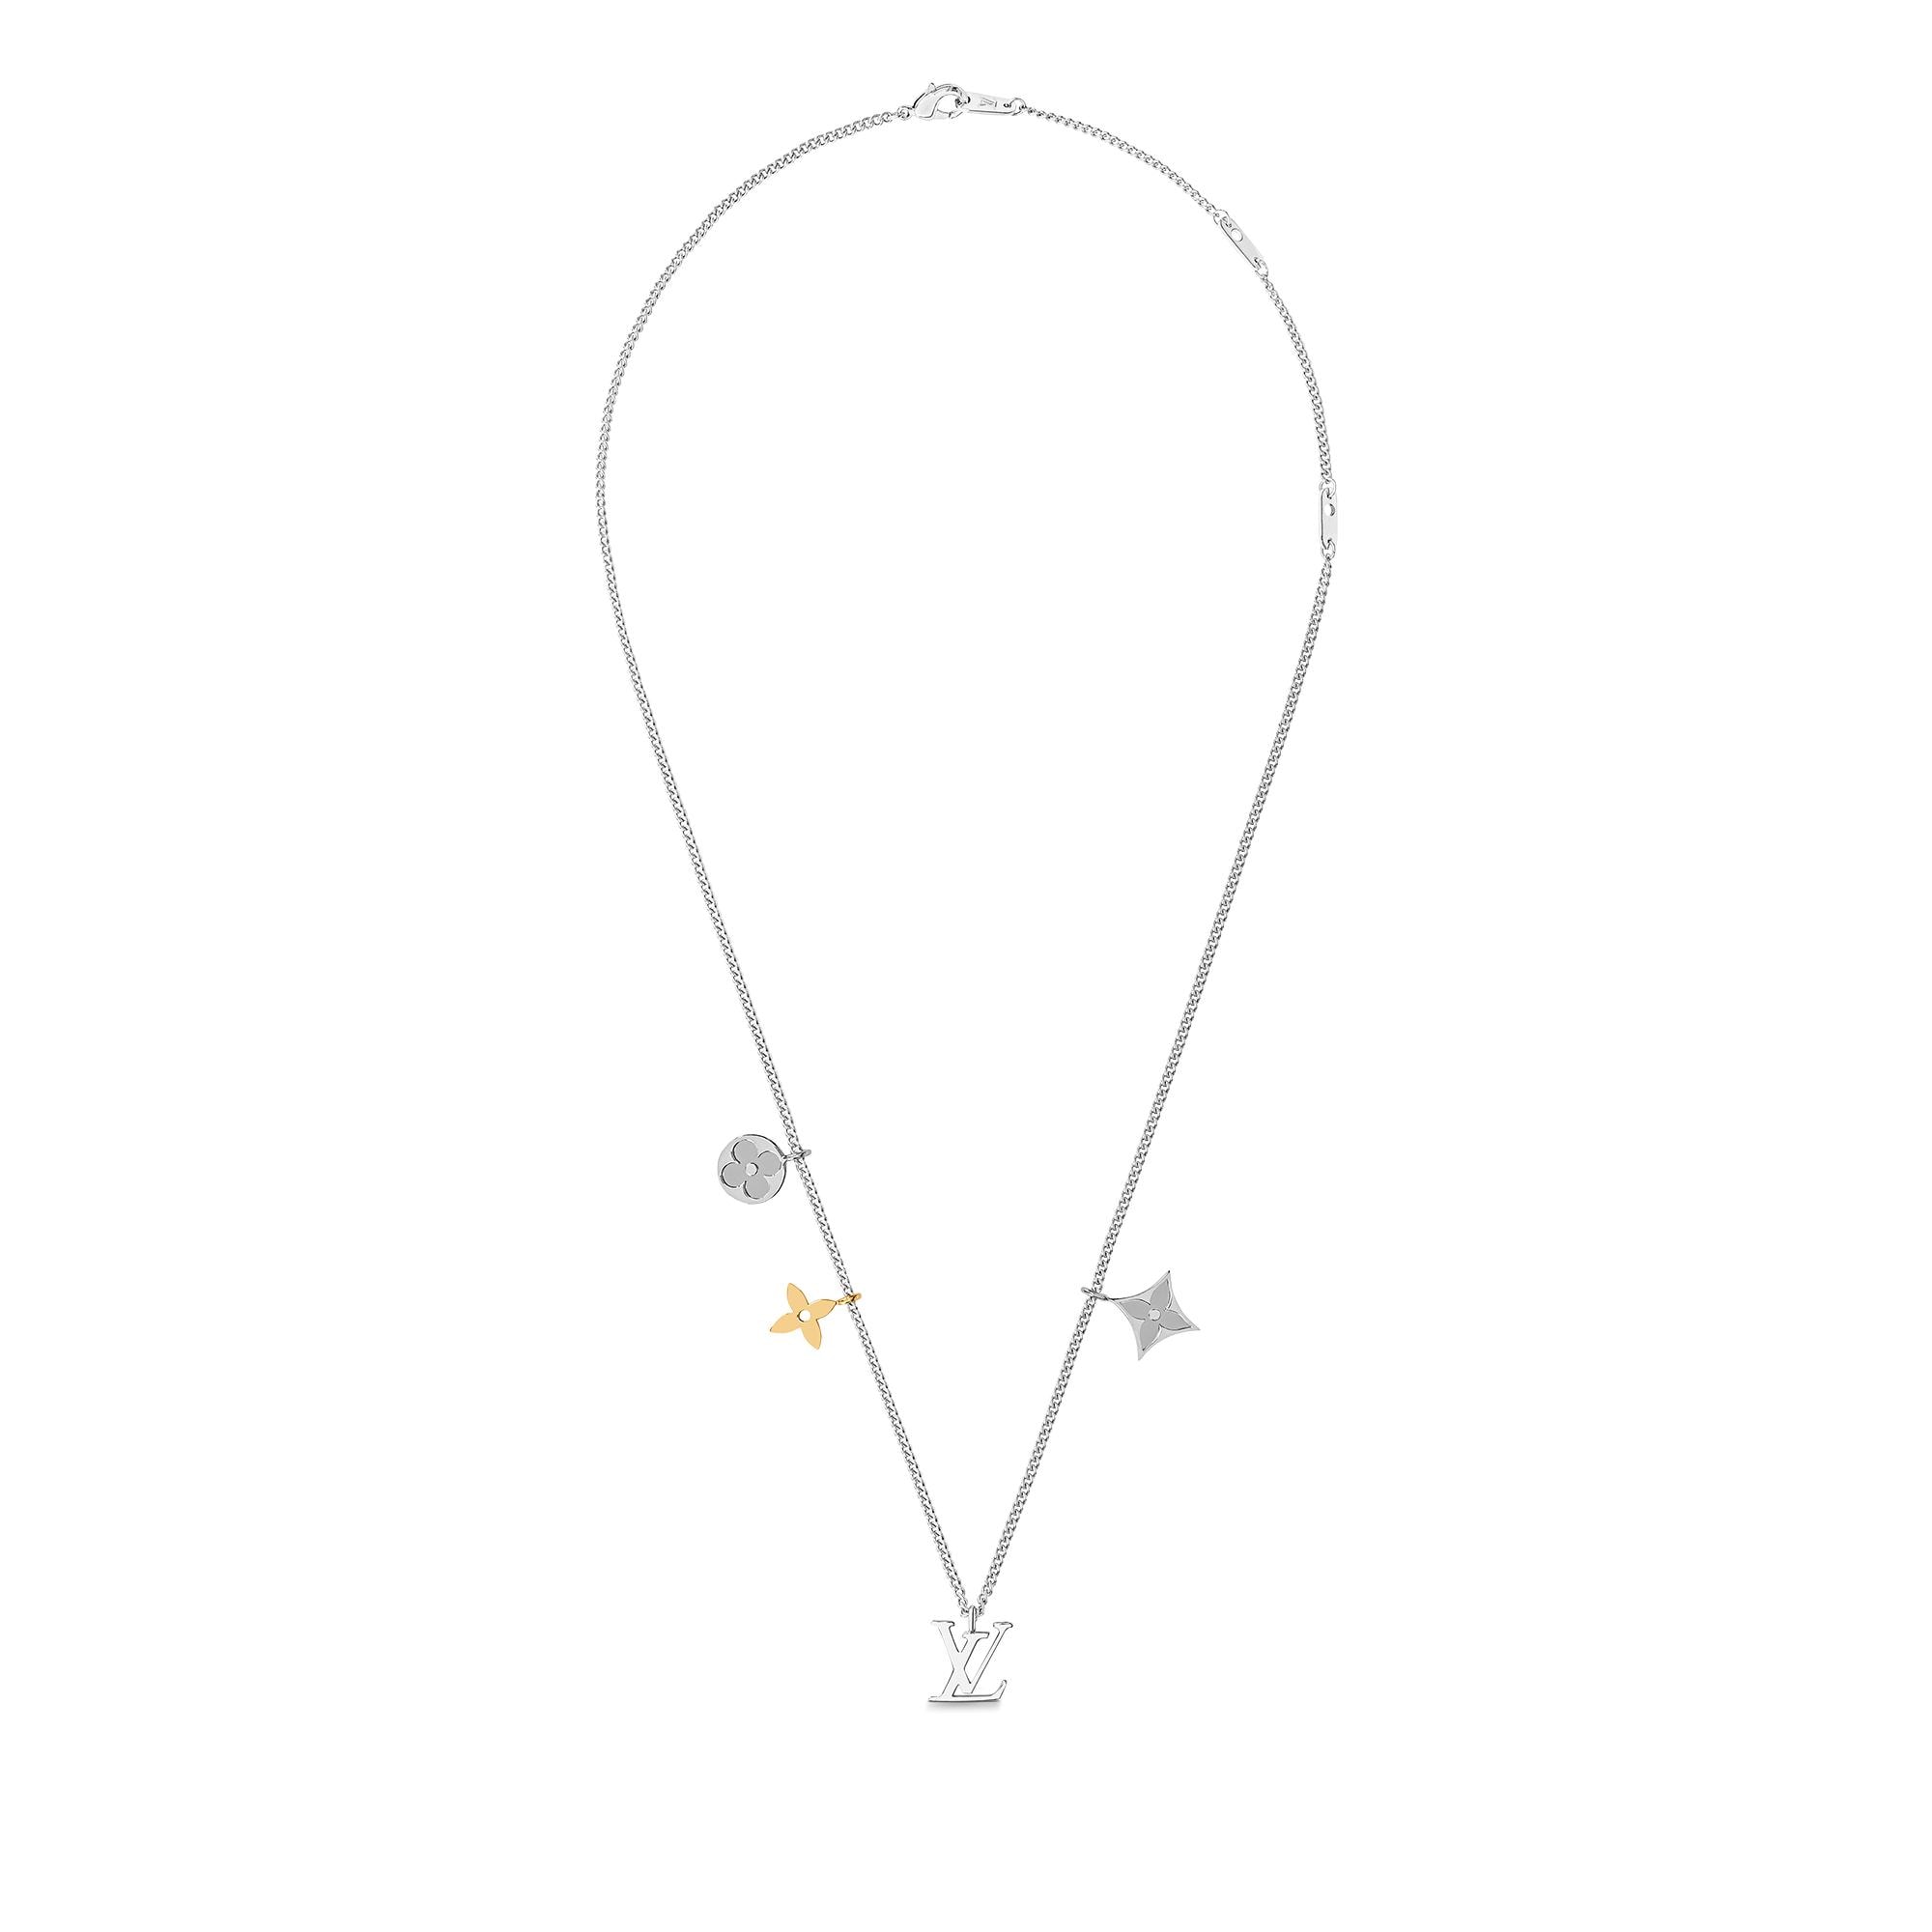 Shop Louis Vuitton Lv instinct pendant (M00522) by naganon